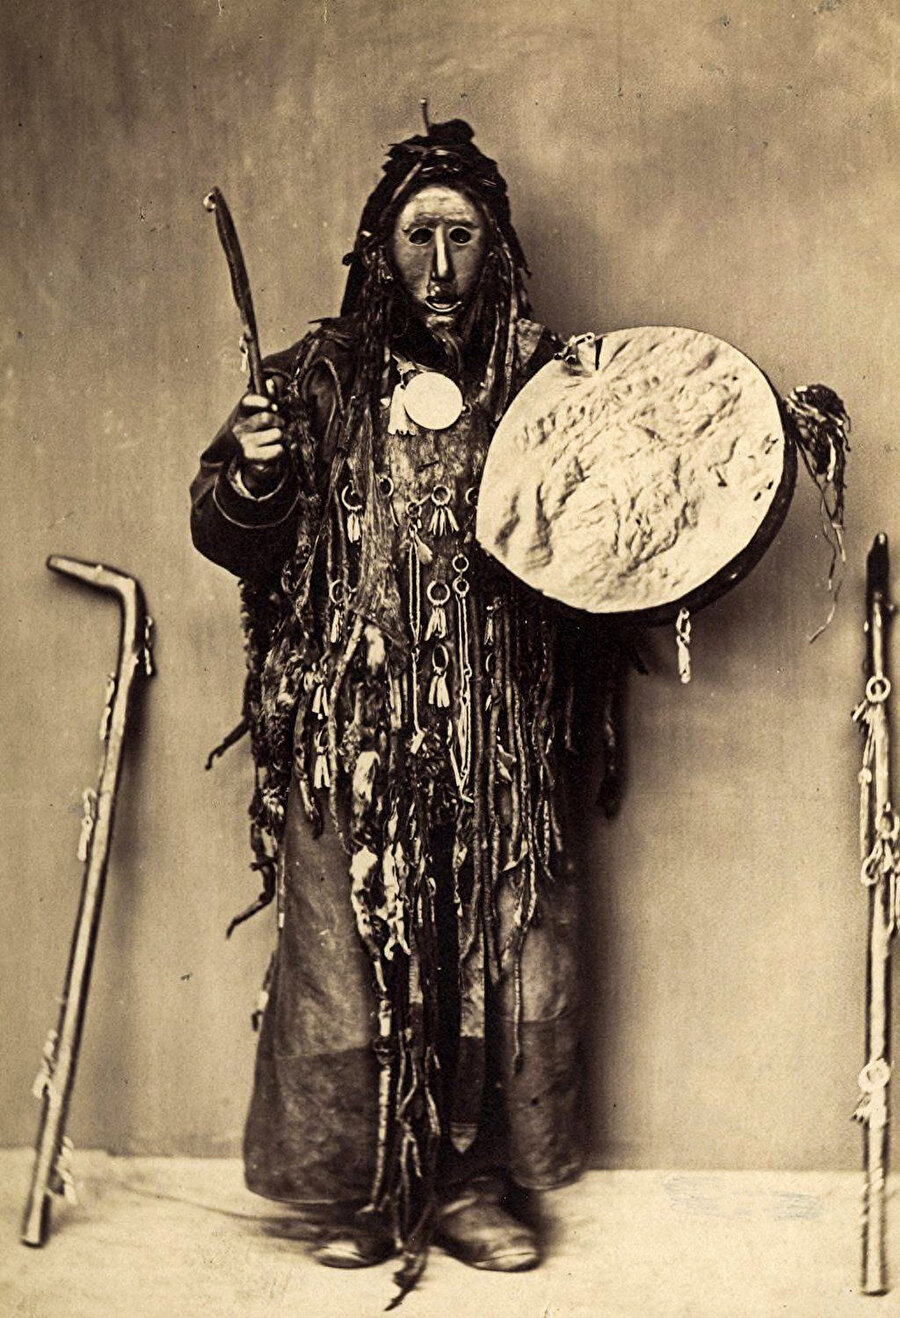 Yapılan bilimsel araştırmalar neticesinde Altay ve Sibirya halklarının kullandıkları ritüellik maskeleri ve baş giysilerine dair hacimli bir kaynakça ve materyal oluşmuştur.